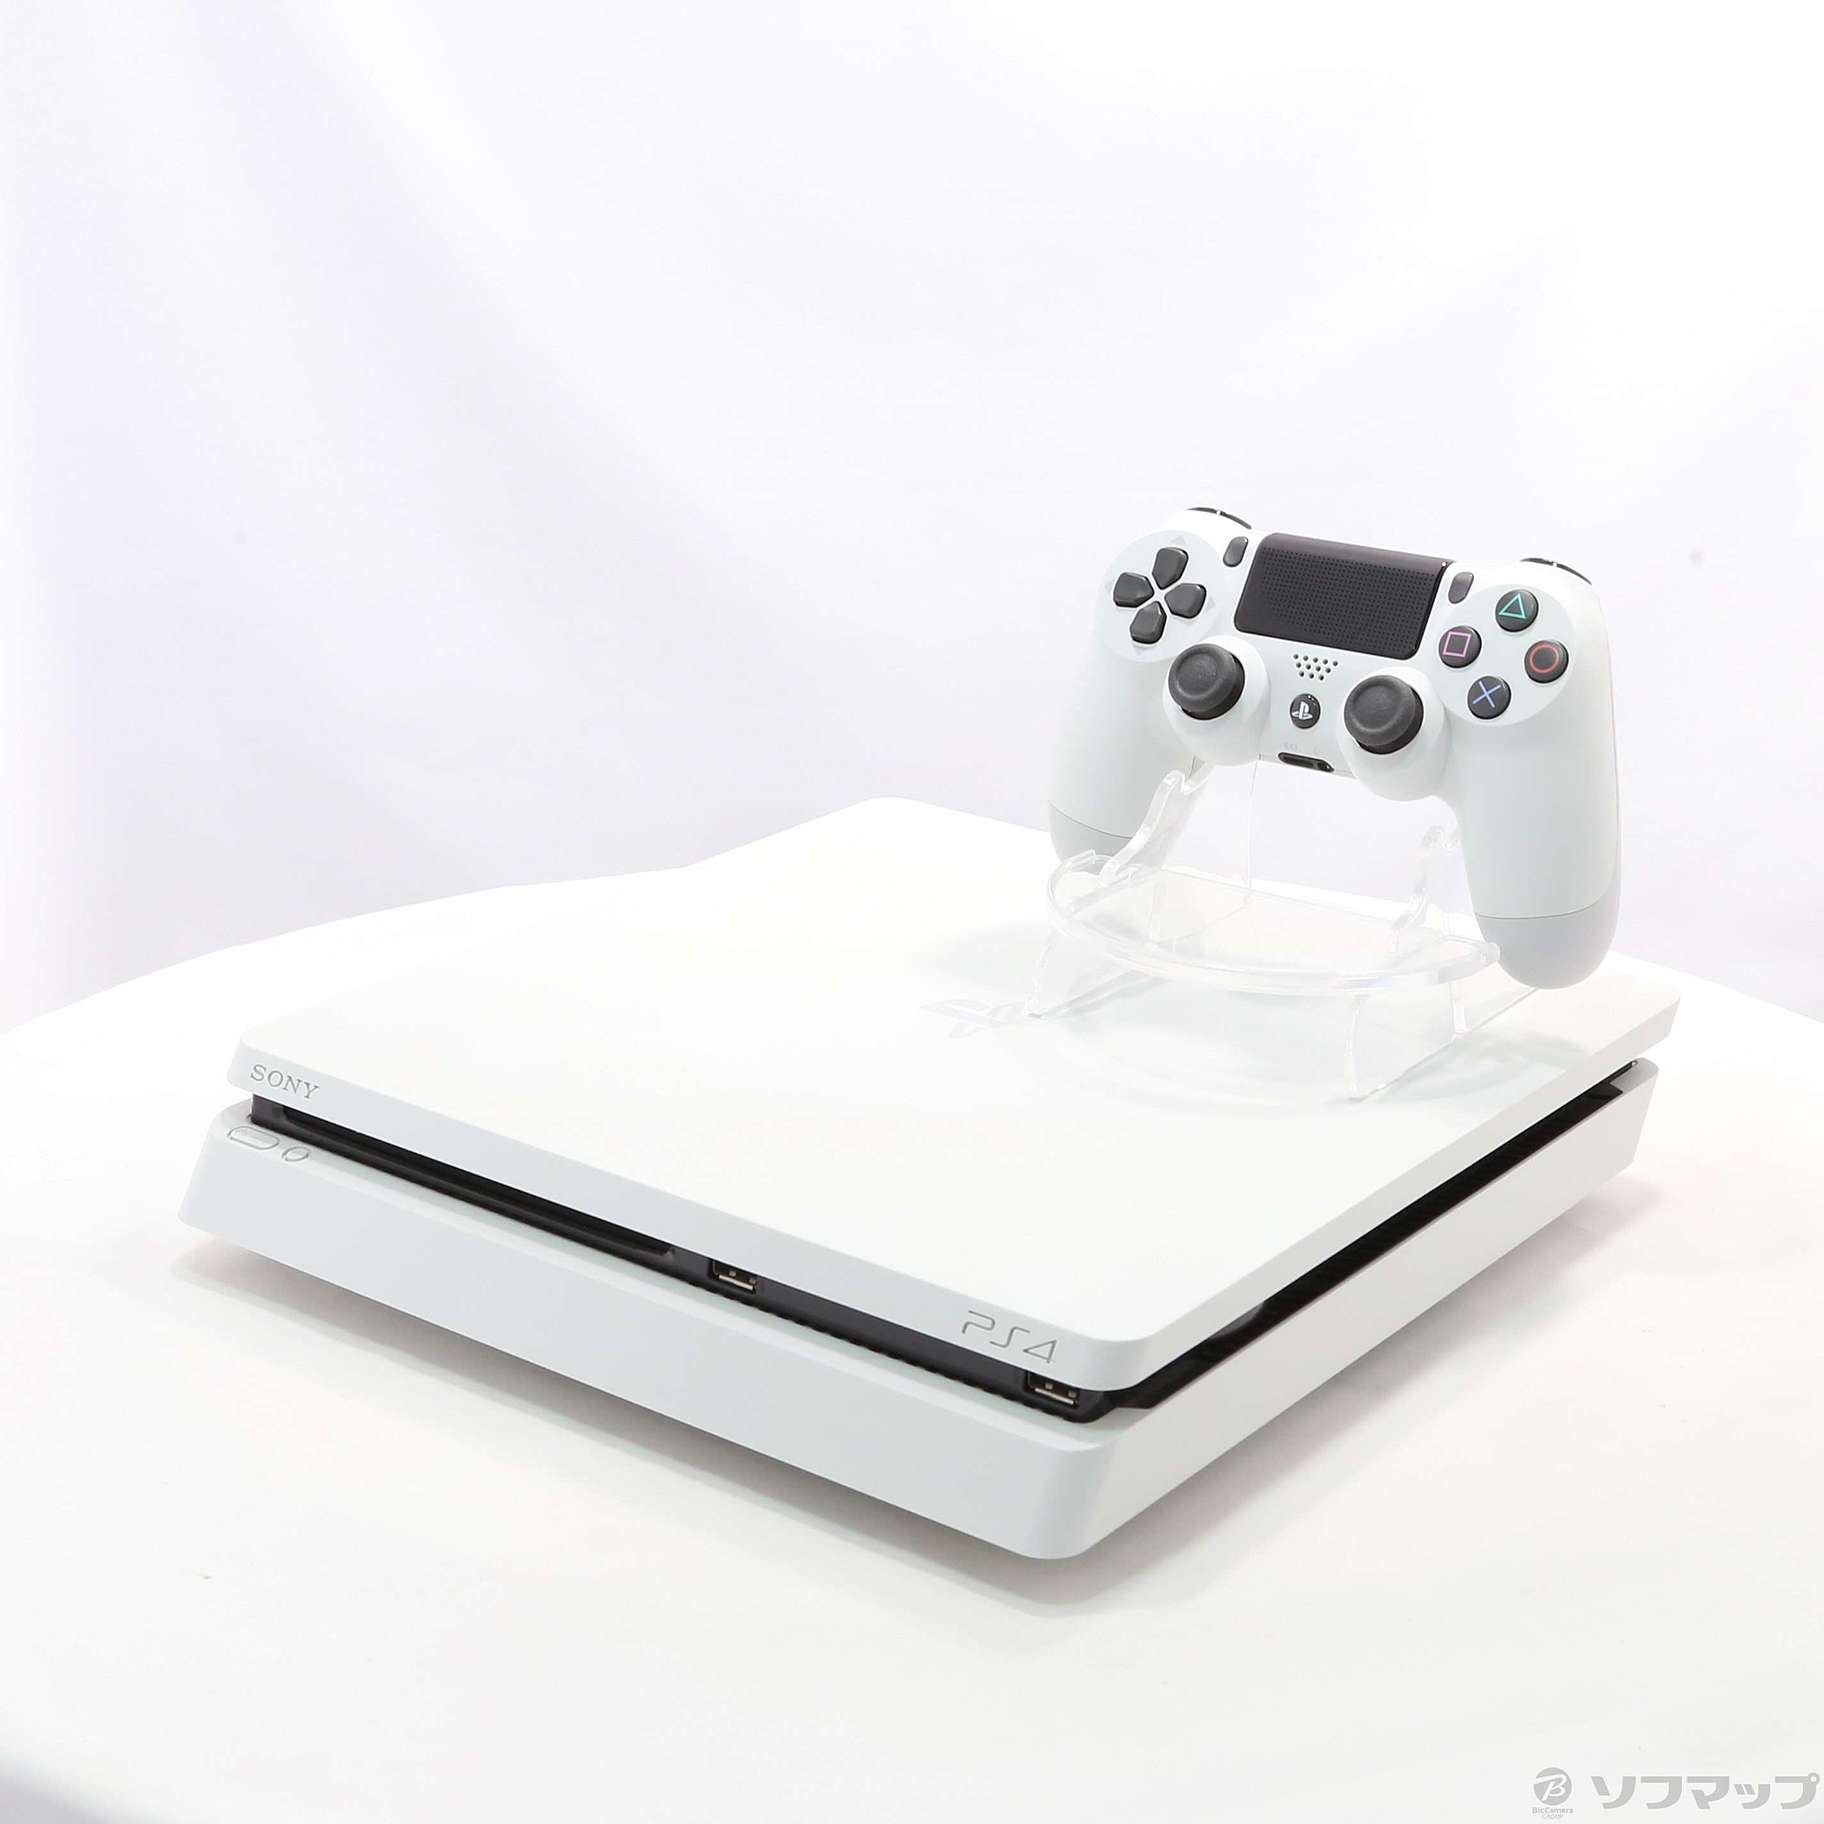 中古】PlayStation 4 グレイシャー・ホワイト 500GB ◇12/23(金)値下げ